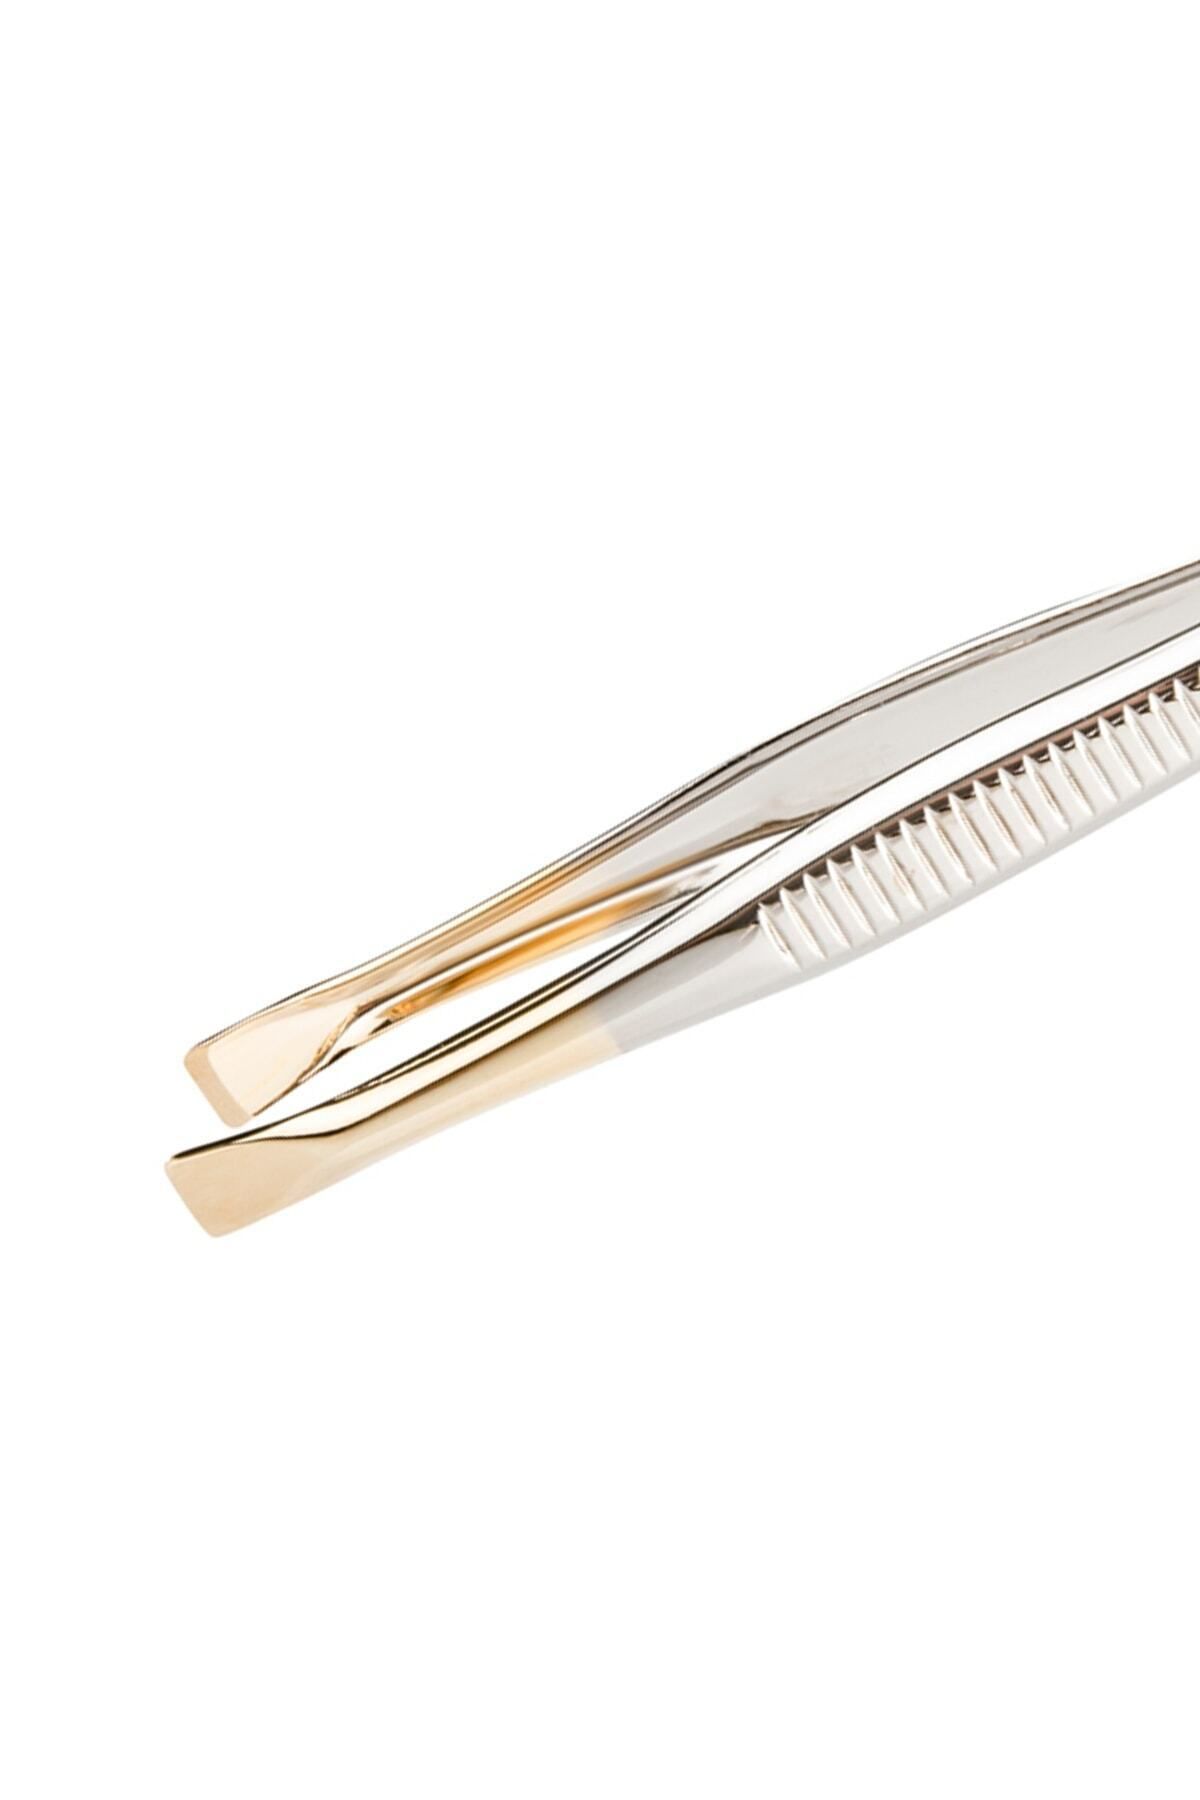 H&E LUXURY DESIGN Profesyonel Çelik Cımbız Silver-gold Kalın Uç 01 TK0409